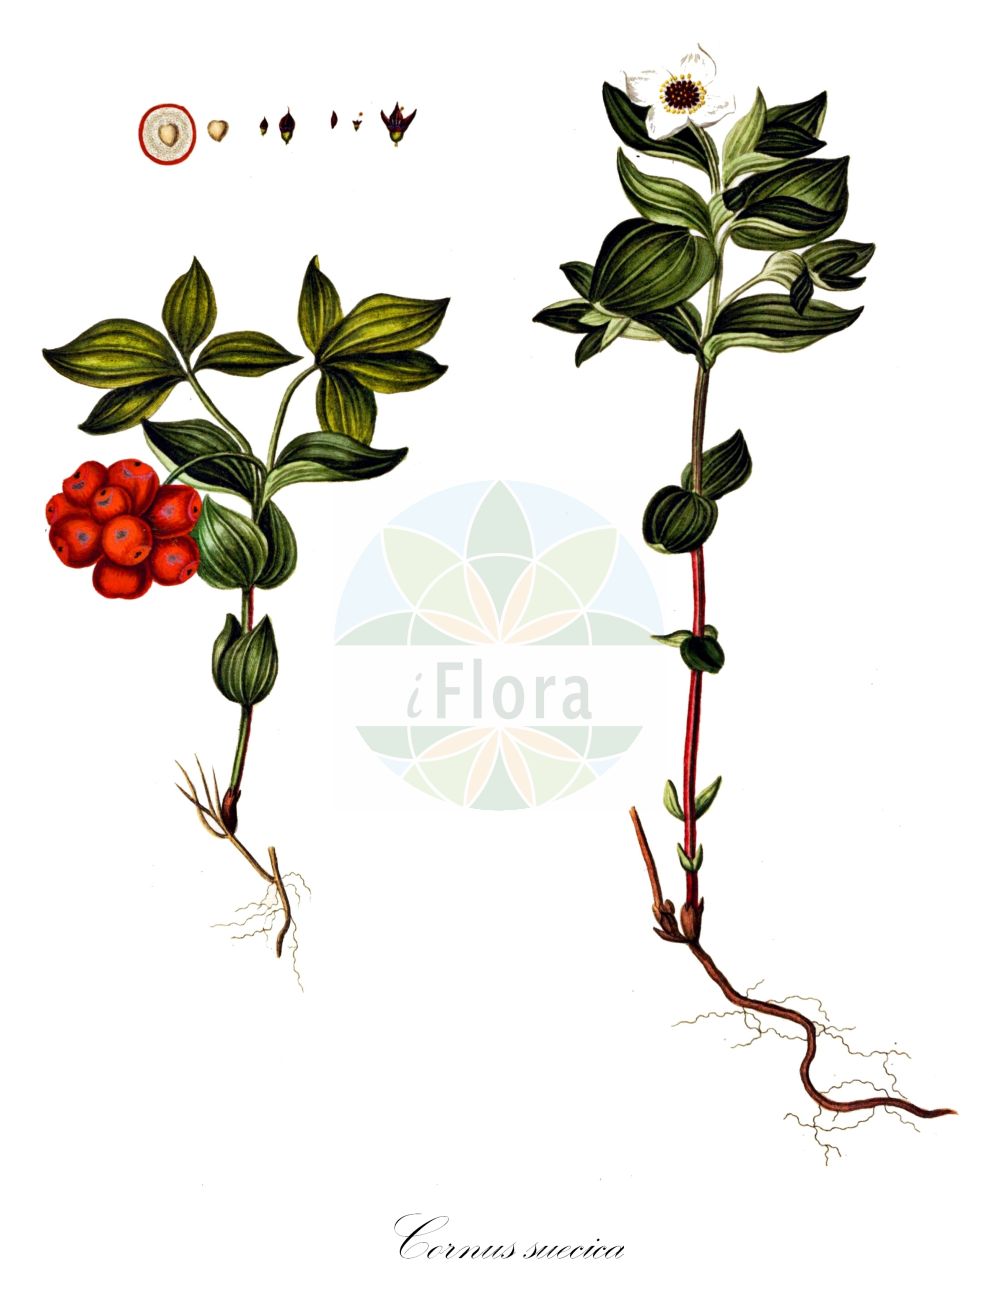 Historische Abbildung von Cornus suecica (Schwedischer Hartriegel - Dwarf Cornel). Das Bild zeigt Blatt, Bluete, Frucht und Same. ---- Historical Drawing of Cornus suecica (Schwedischer Hartriegel - Dwarf Cornel). The image is showing leaf, flower, fruit and seed.(Cornus suecica,Schwedischer Hartriegel,Dwarf Cornel,Arctocrania suecica,Chamaepericlymenum suecicum,Cornella suecica,Cornus biramis,Cornus borealis,Cornus herbacea,Cornus instolonea,Cornus suecica,Eukrania suecica,Ossea instolonea,Swida instolonea,Thelycrania instolonea,Schwedischer Hartriegel,Dwarf Cornel,Lapland Cornel,Cornus,Hartriegel,Cornel,Cornaceae,Hartriegelgewächse,Dogwood family,Blatt,Bluete,Frucht,Same,leaf,flower,fruit,seed,Oeder (1761-1883))